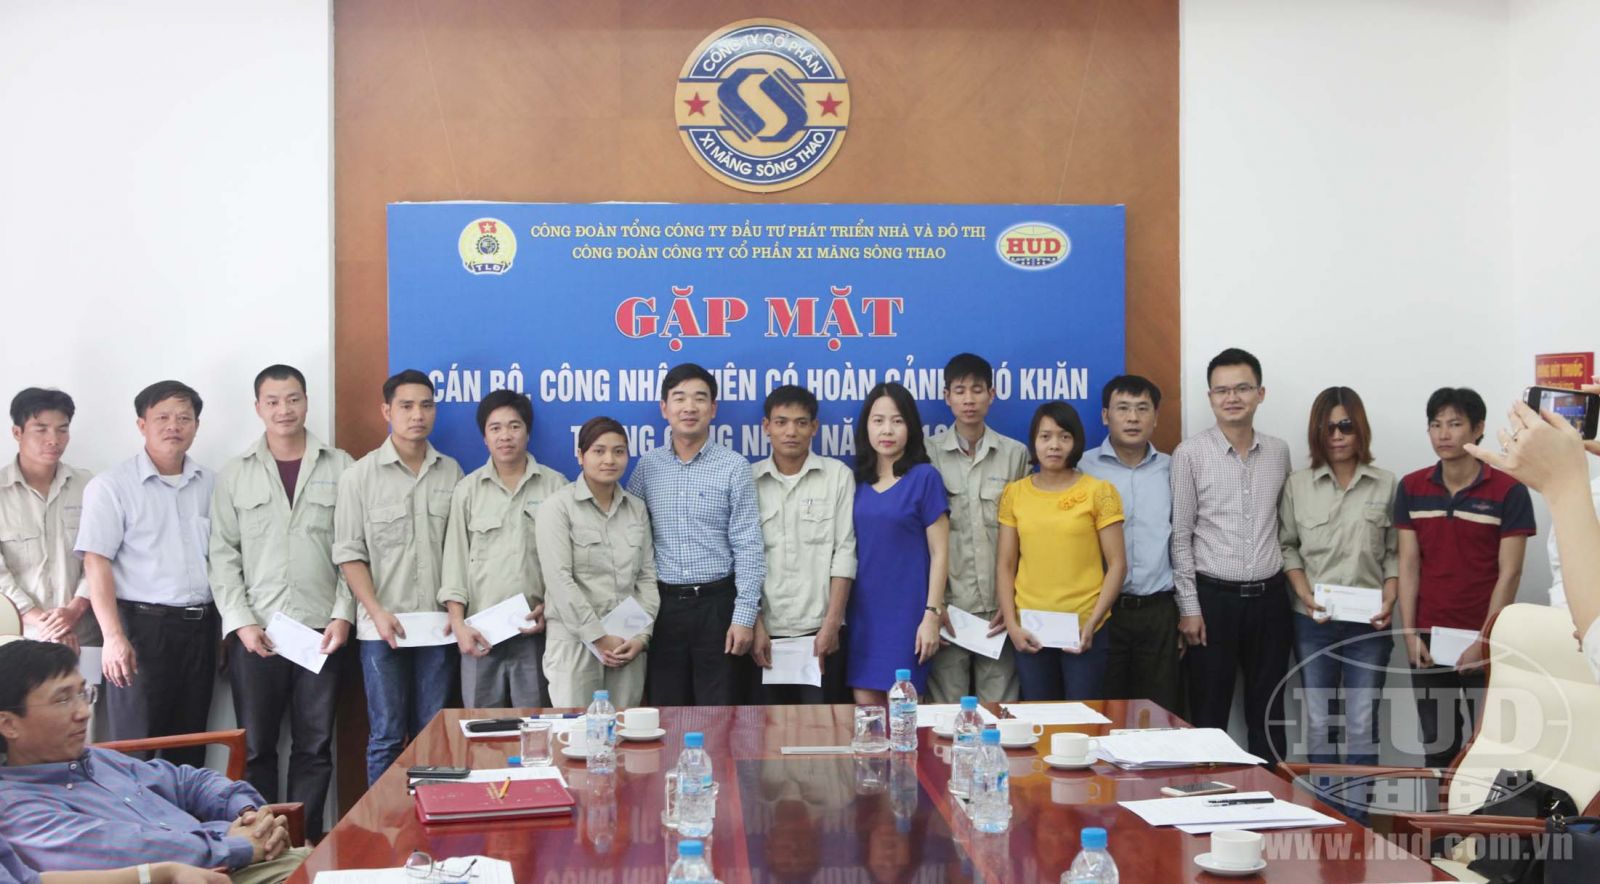 Công đoàn Tổng công ty thăm và tặng quà cho CBCNV người lao động có hoàn cảnh khó khăn và kiểm tra an toàn thực phẩm bếp ăn tập thể tại Công ty CP Xi măng Sông Thao